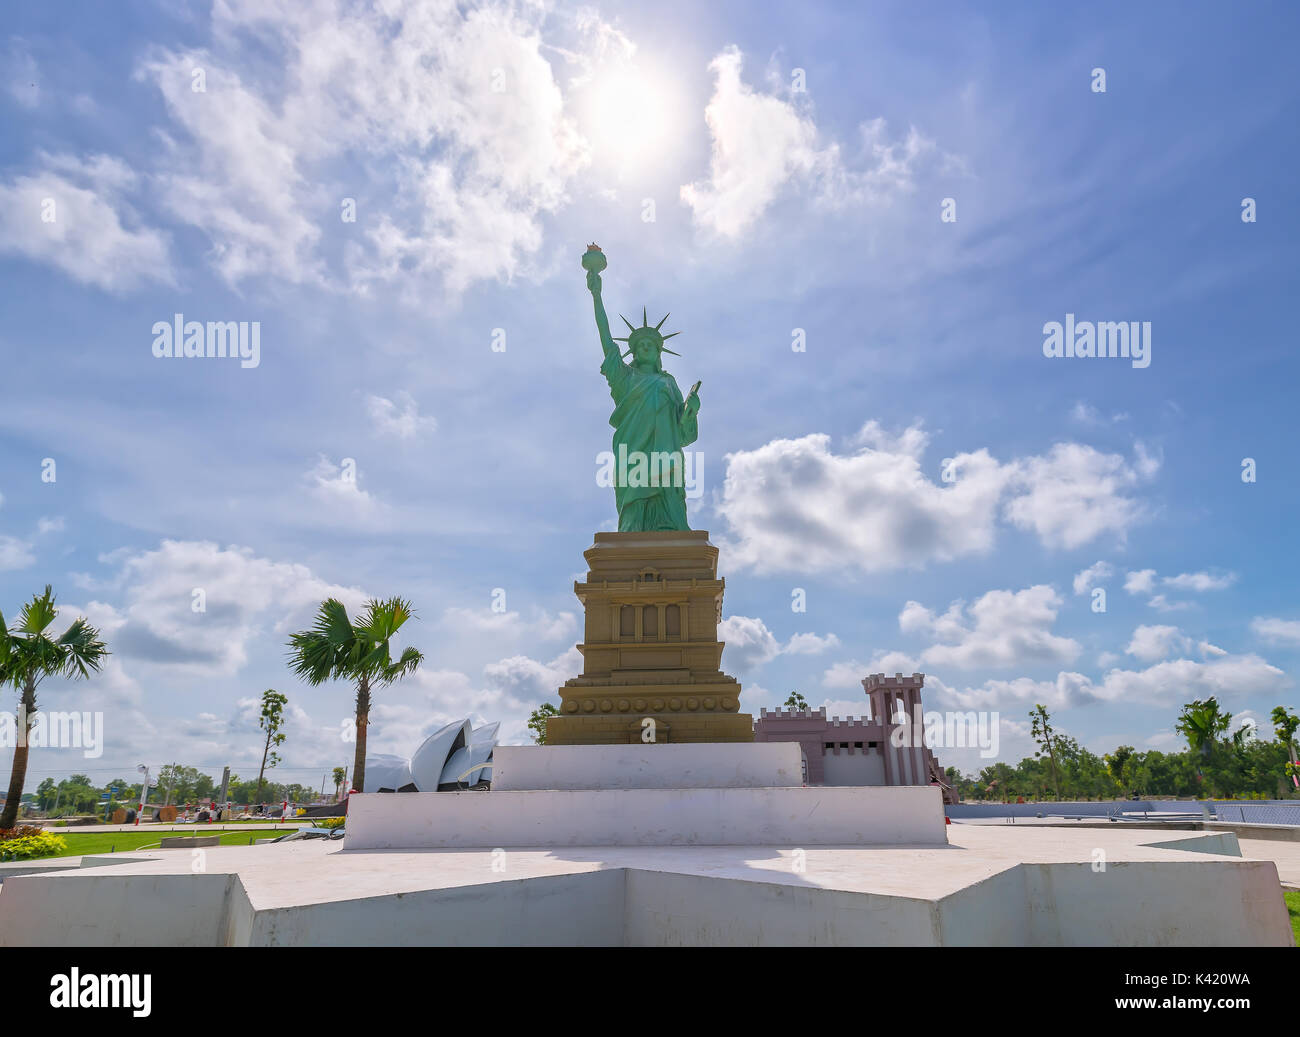 Architekturmodelle Freiheitsstatue ist architektonischen Wunder der Welt in touristischen Gebieten gebaut, um Besucher anzuziehen Stockfoto